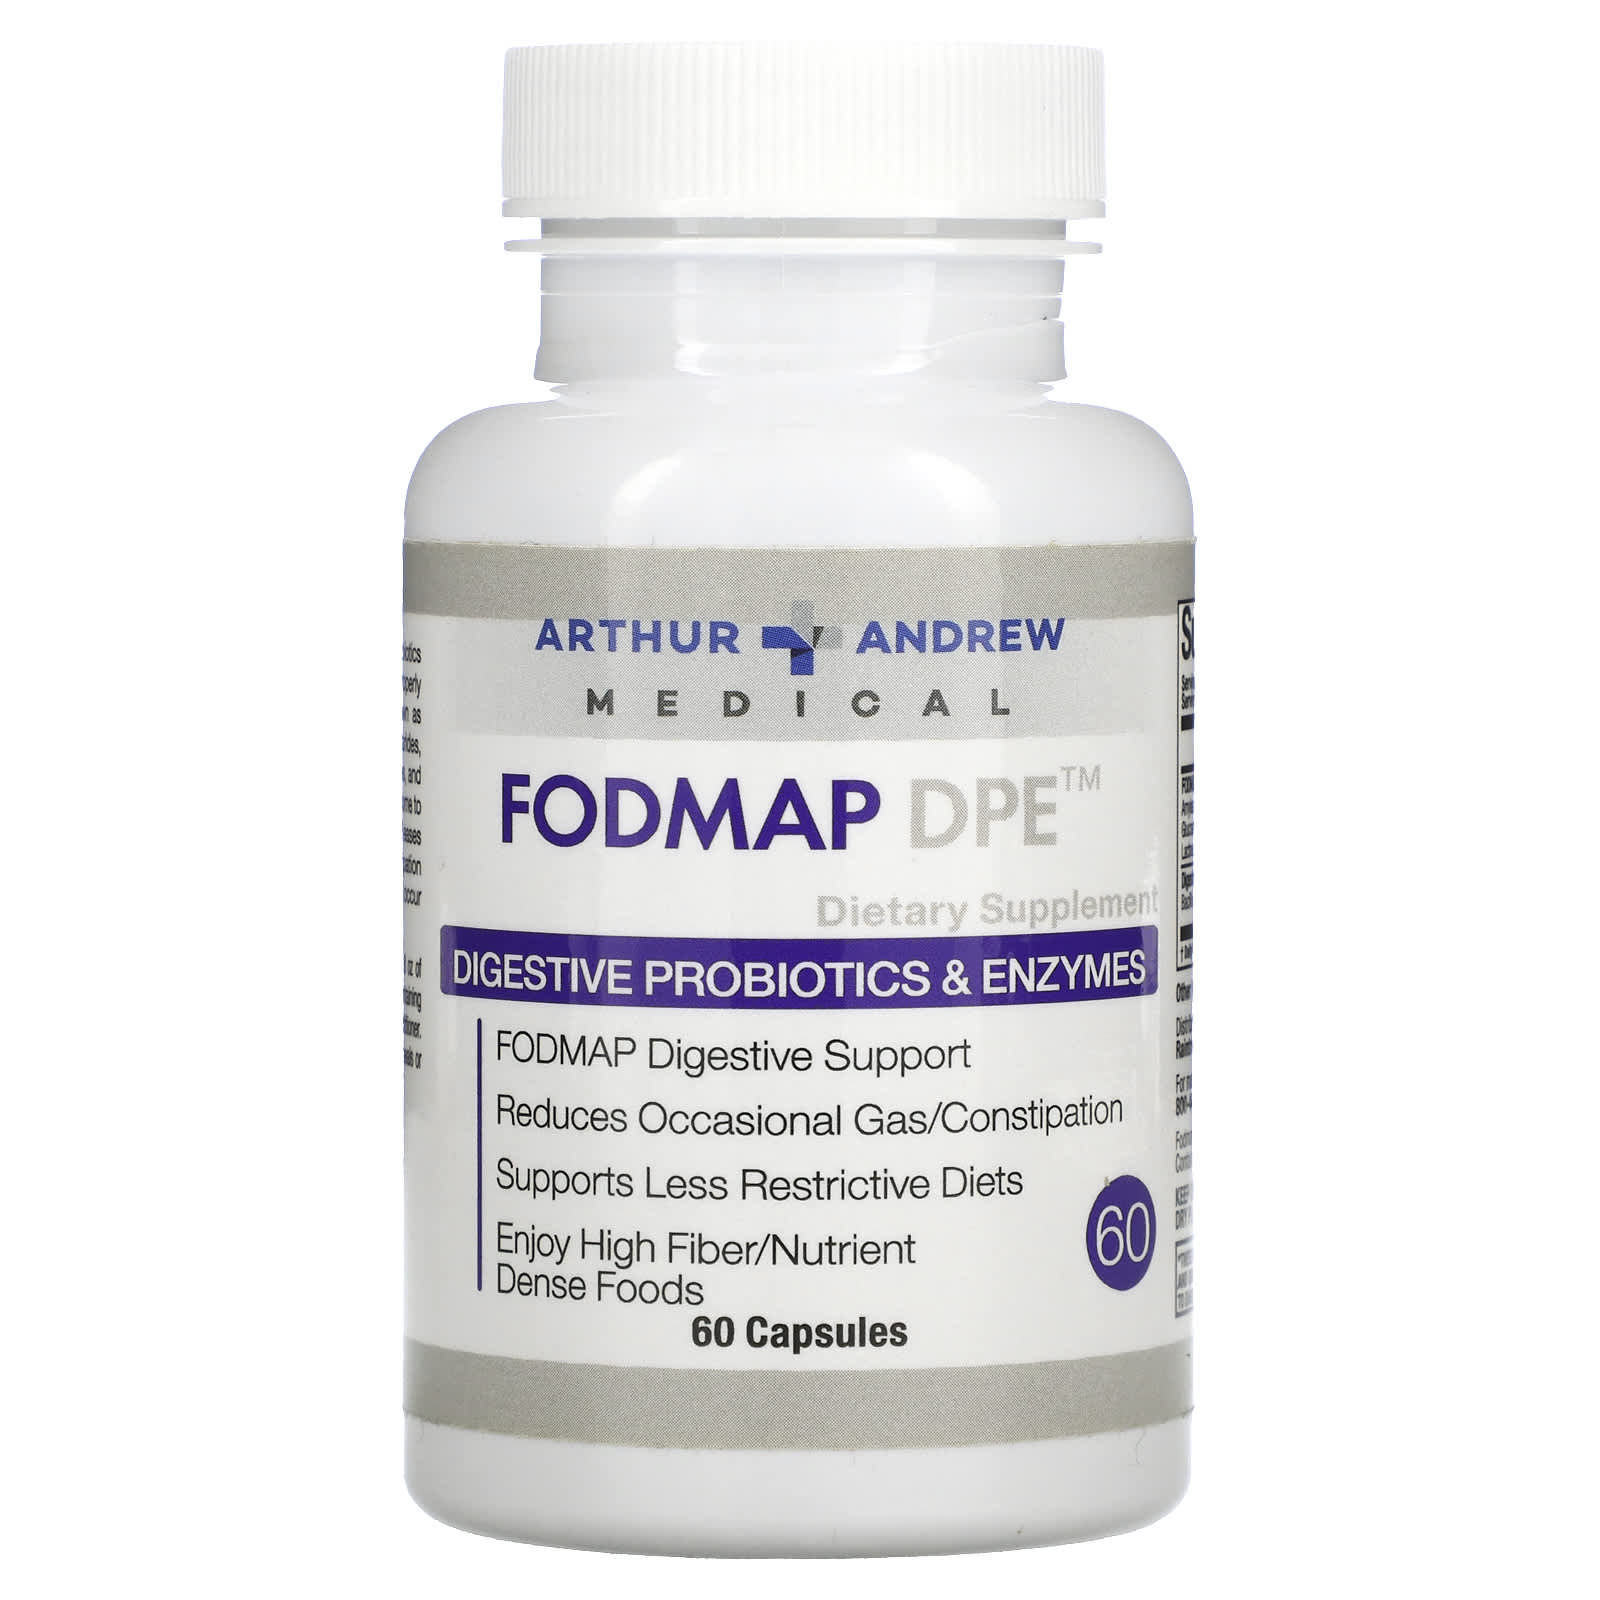 FODMAP DPE 60 капсул Arthur Andrew Medical arthur andrew medical neprofin pet формула с ферментами для ветеринаров 50 г